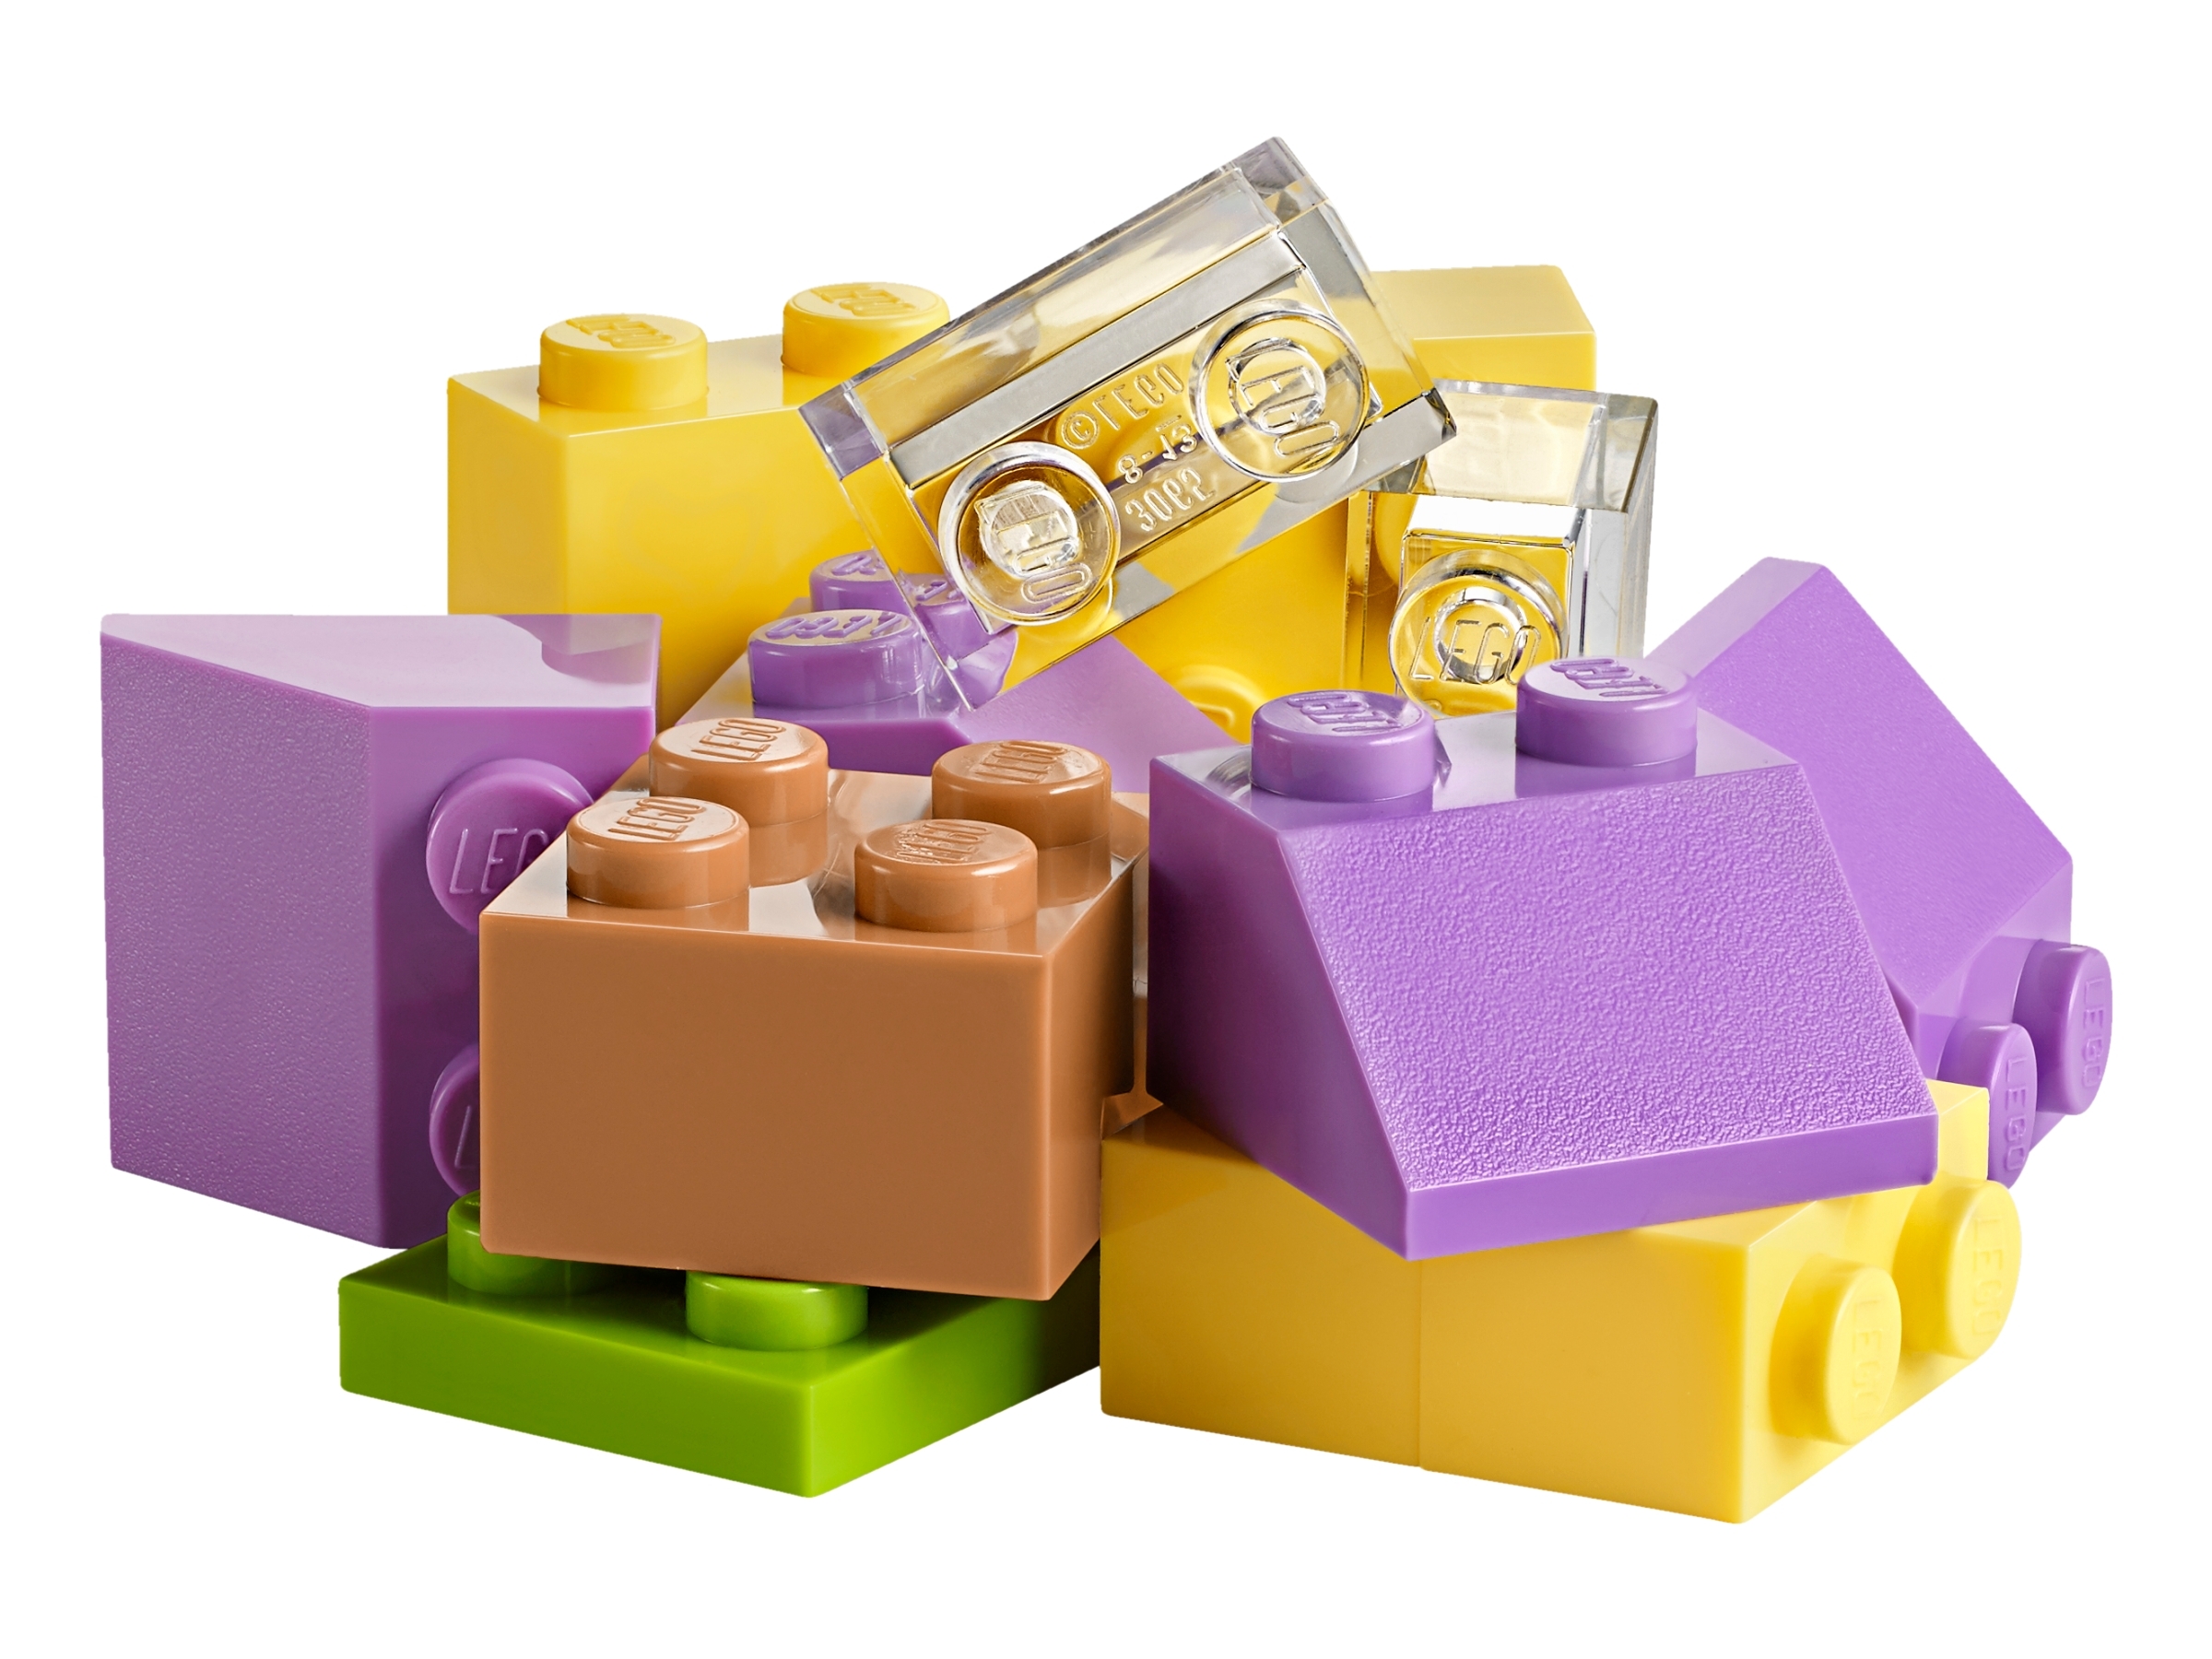 10713 lego pieces